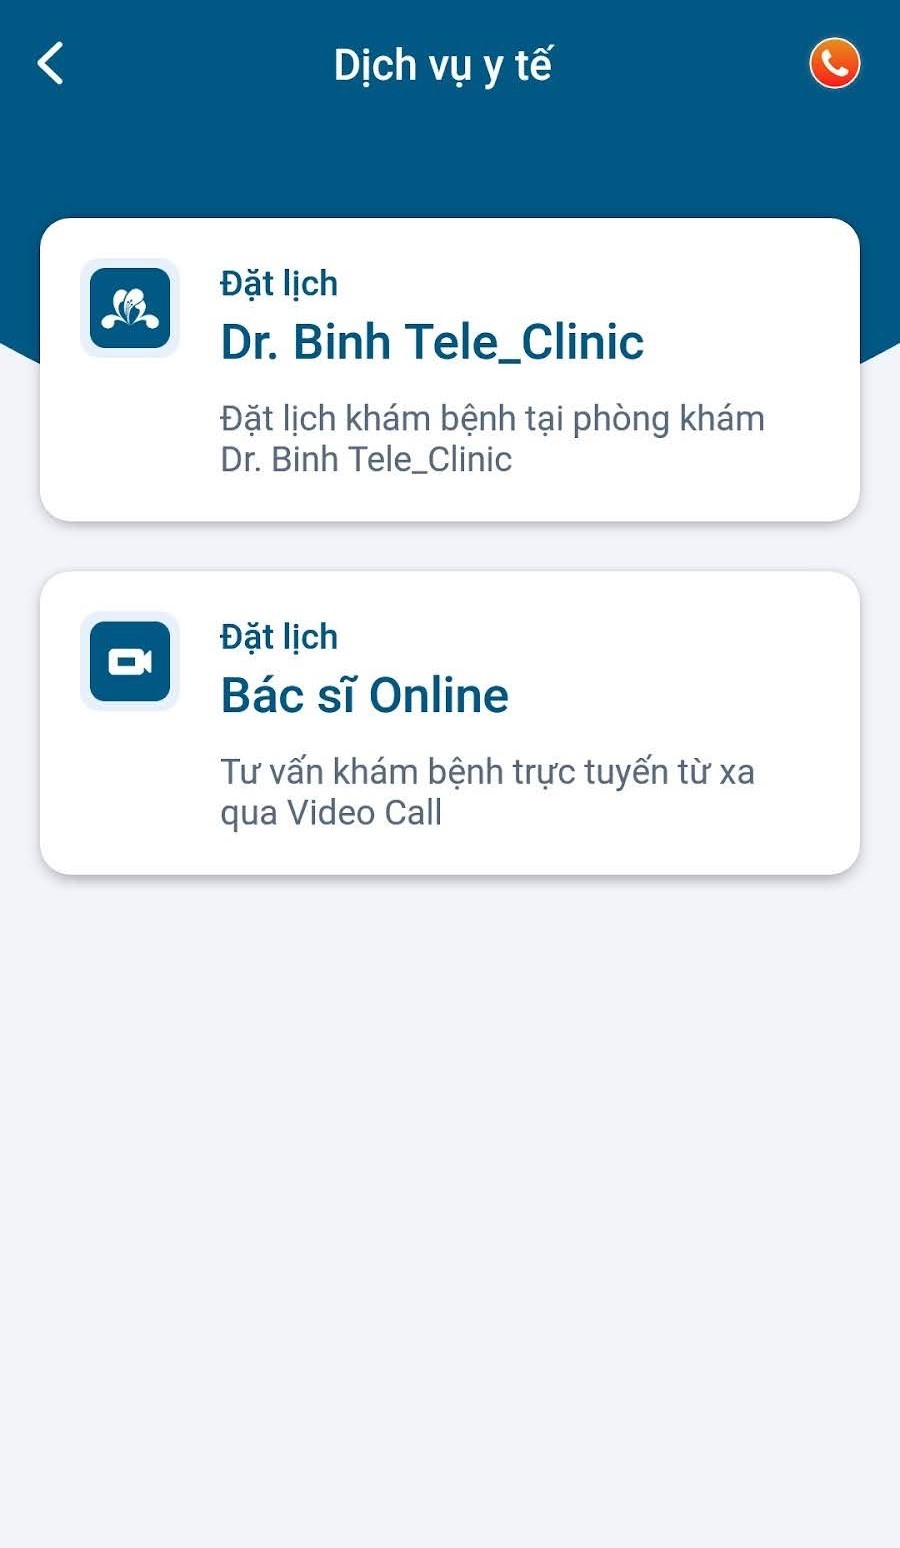 Người dùng Medihome có thể đặt khám tại phòng khám Dr.Binh Tele_Clinic hoặc khám online với bác sĩ trực tuyến